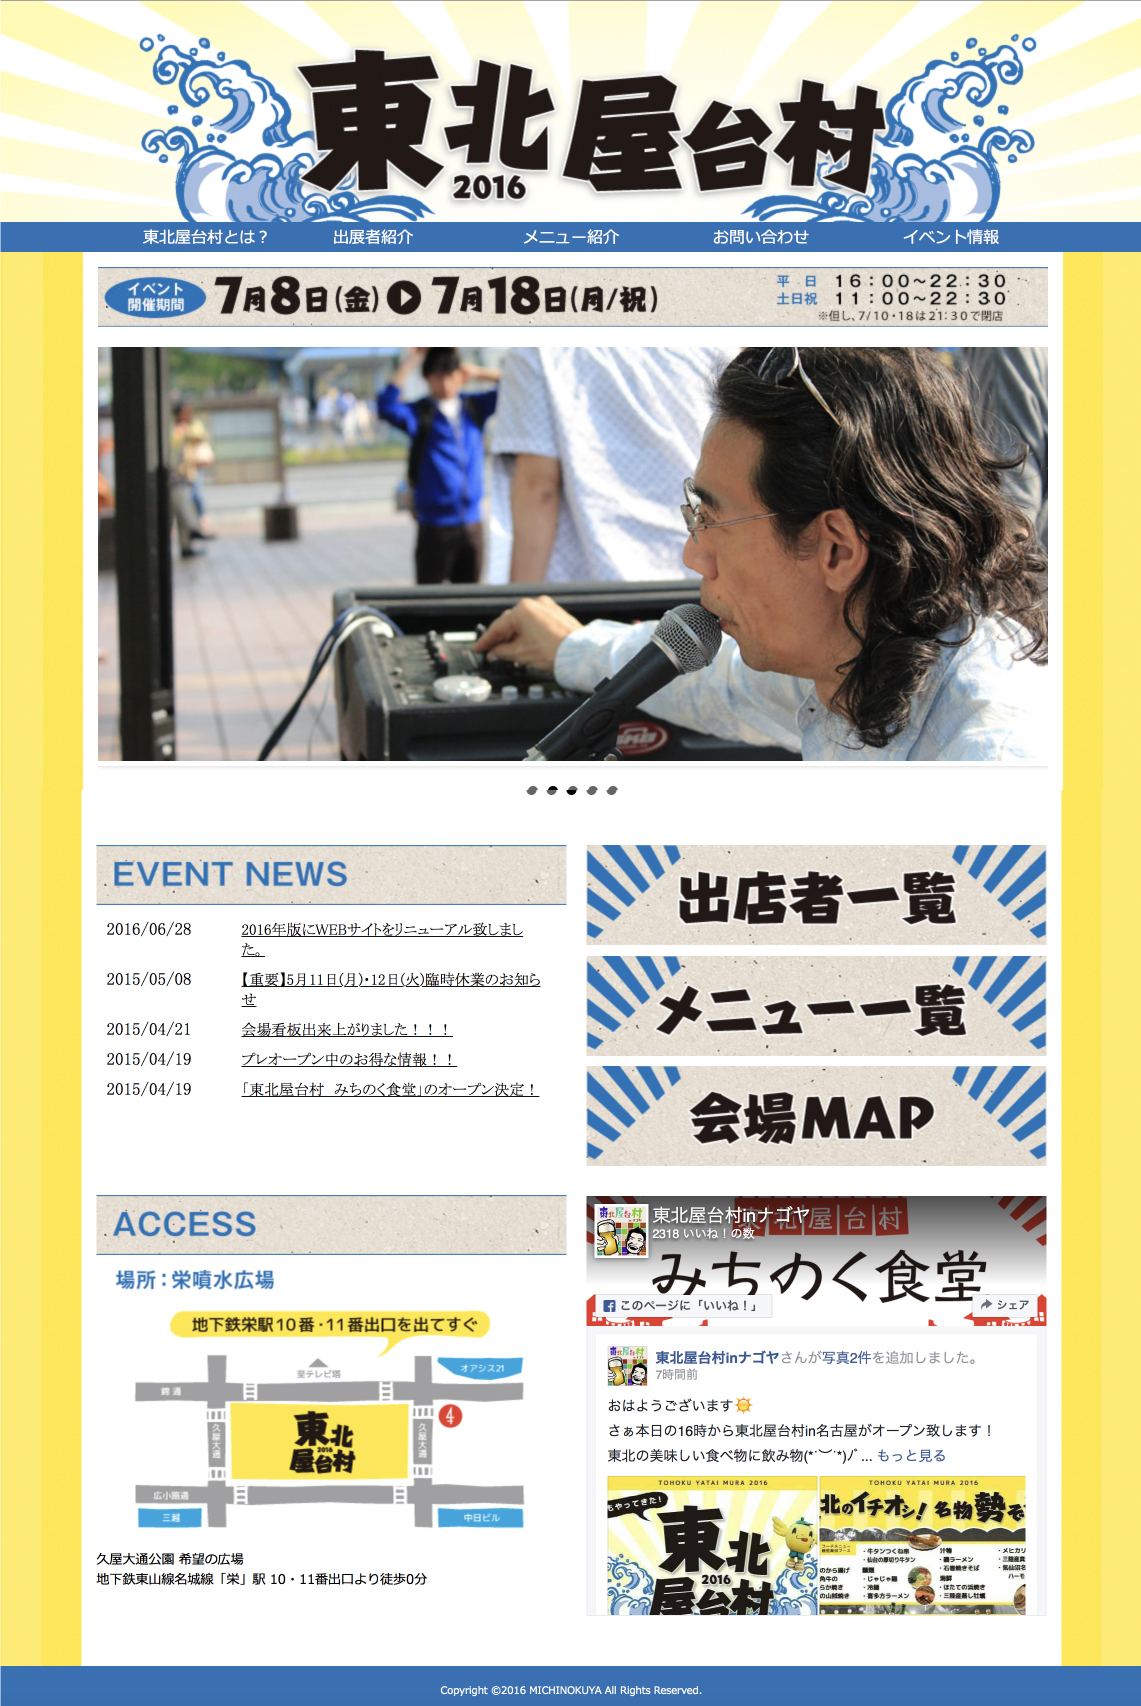 名古屋市実施「にぎわい広場の制度設計」のための社会実験協賛